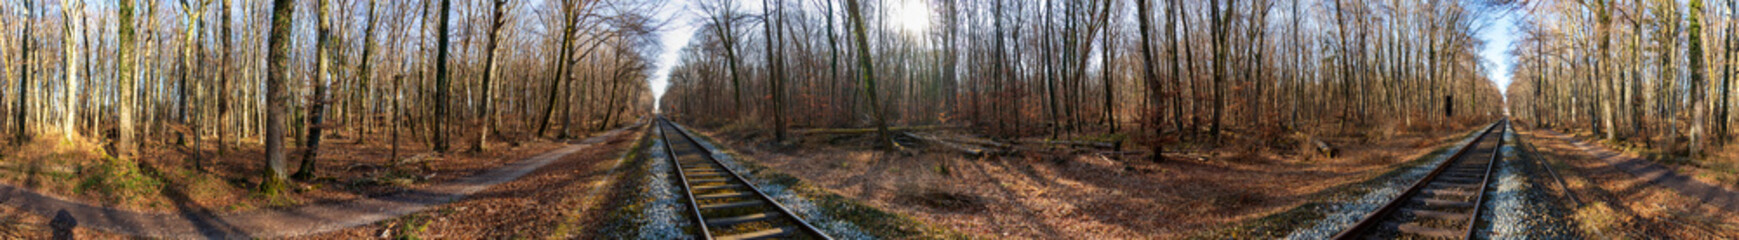 Landschaftsbilder mit geraden Schienenweg durch einen Wald